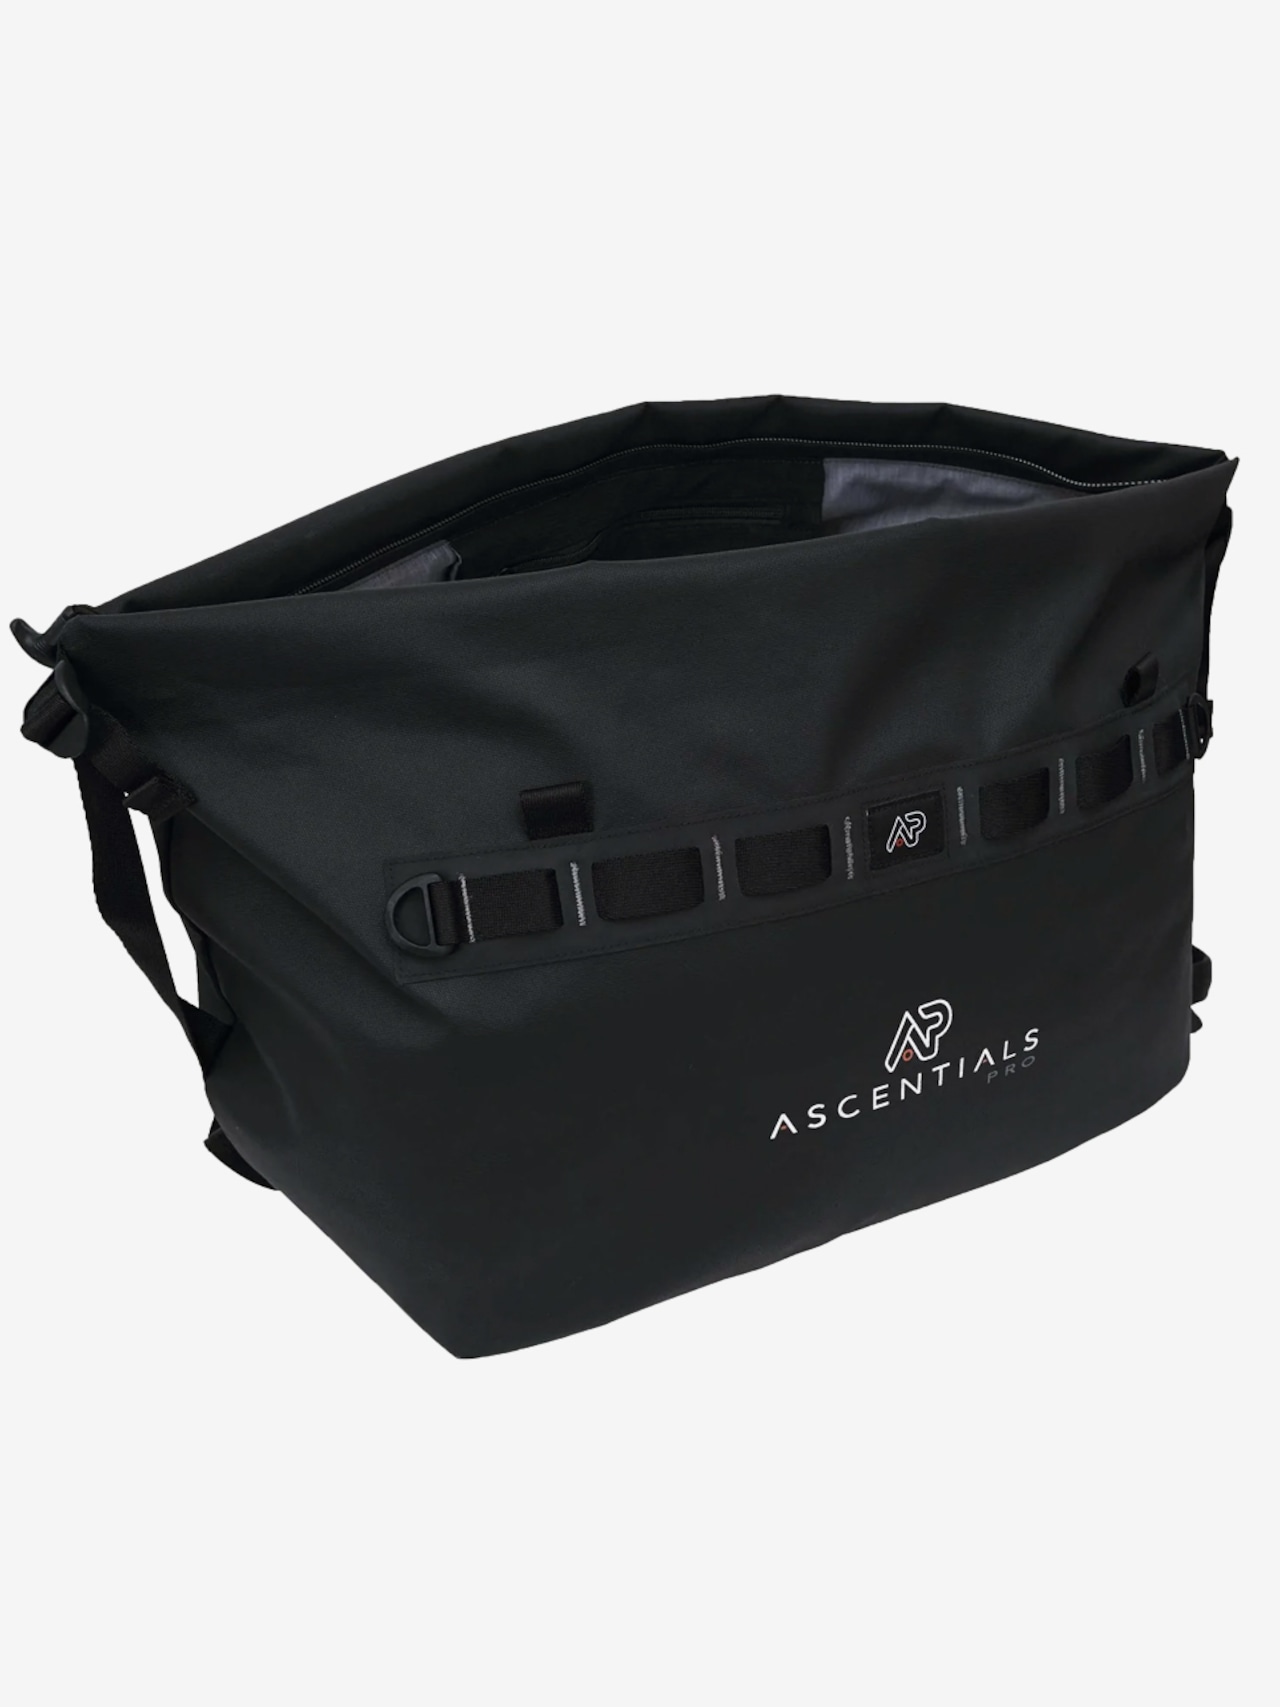 AP bags「Vipr Carbon（大容量リュック）」ー 送料無料